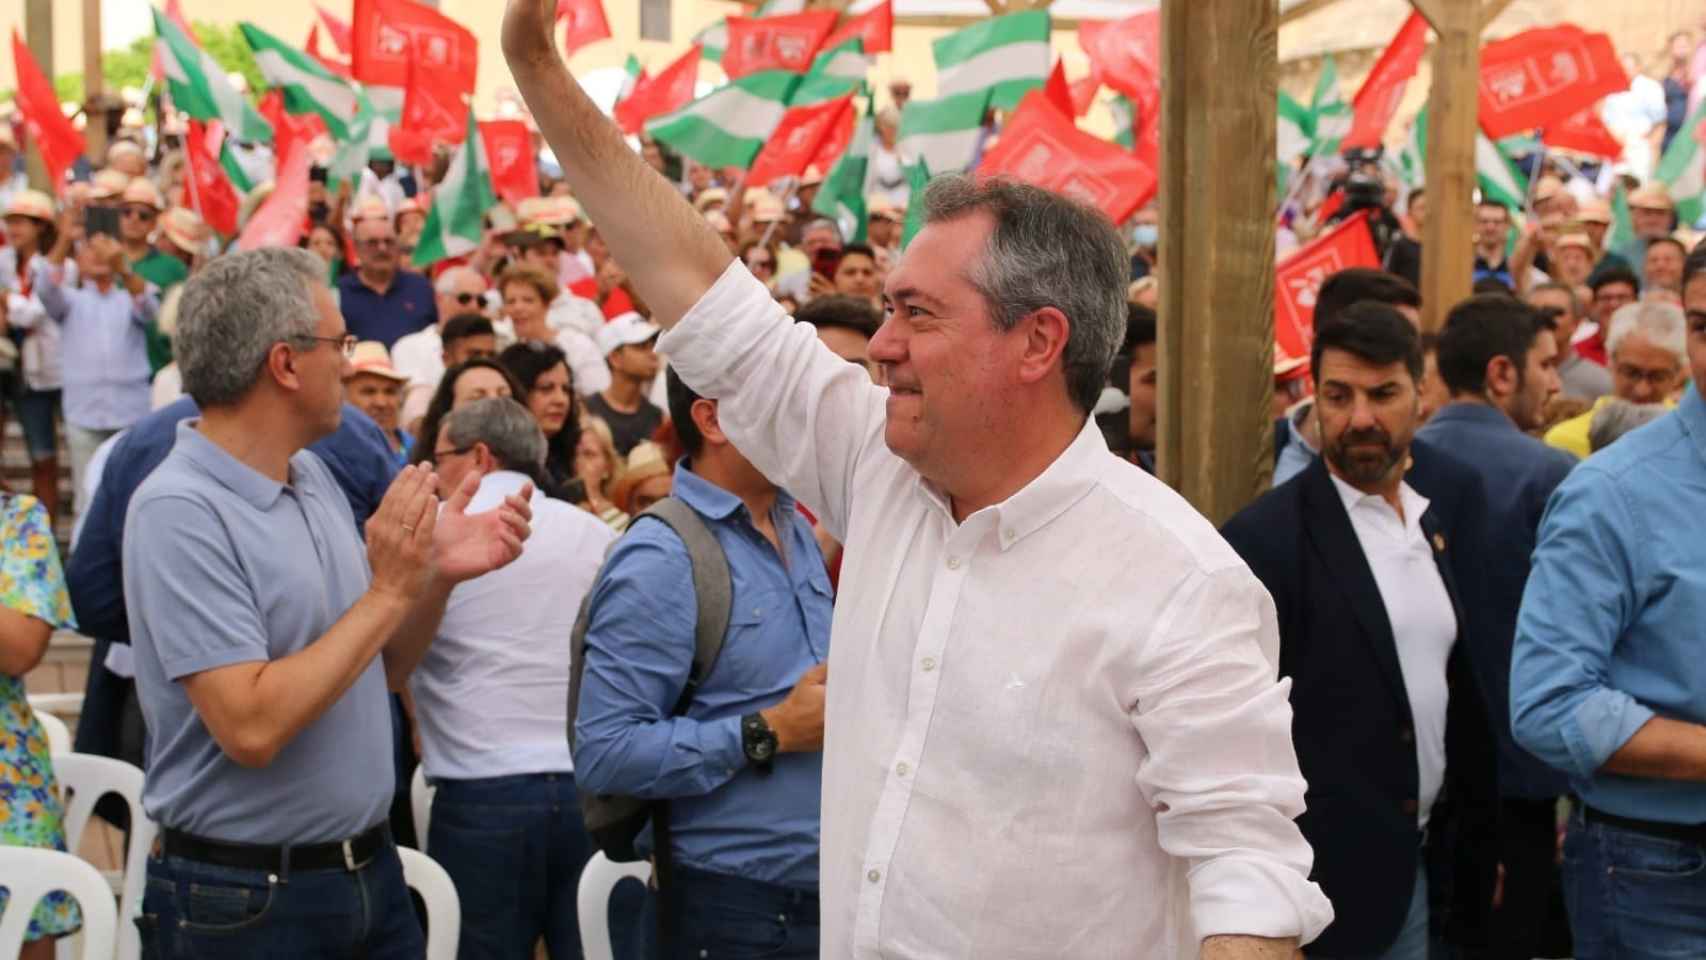 El candidato socialista a la Presidencia de Andalucía saluda en el mitin de este domingo.